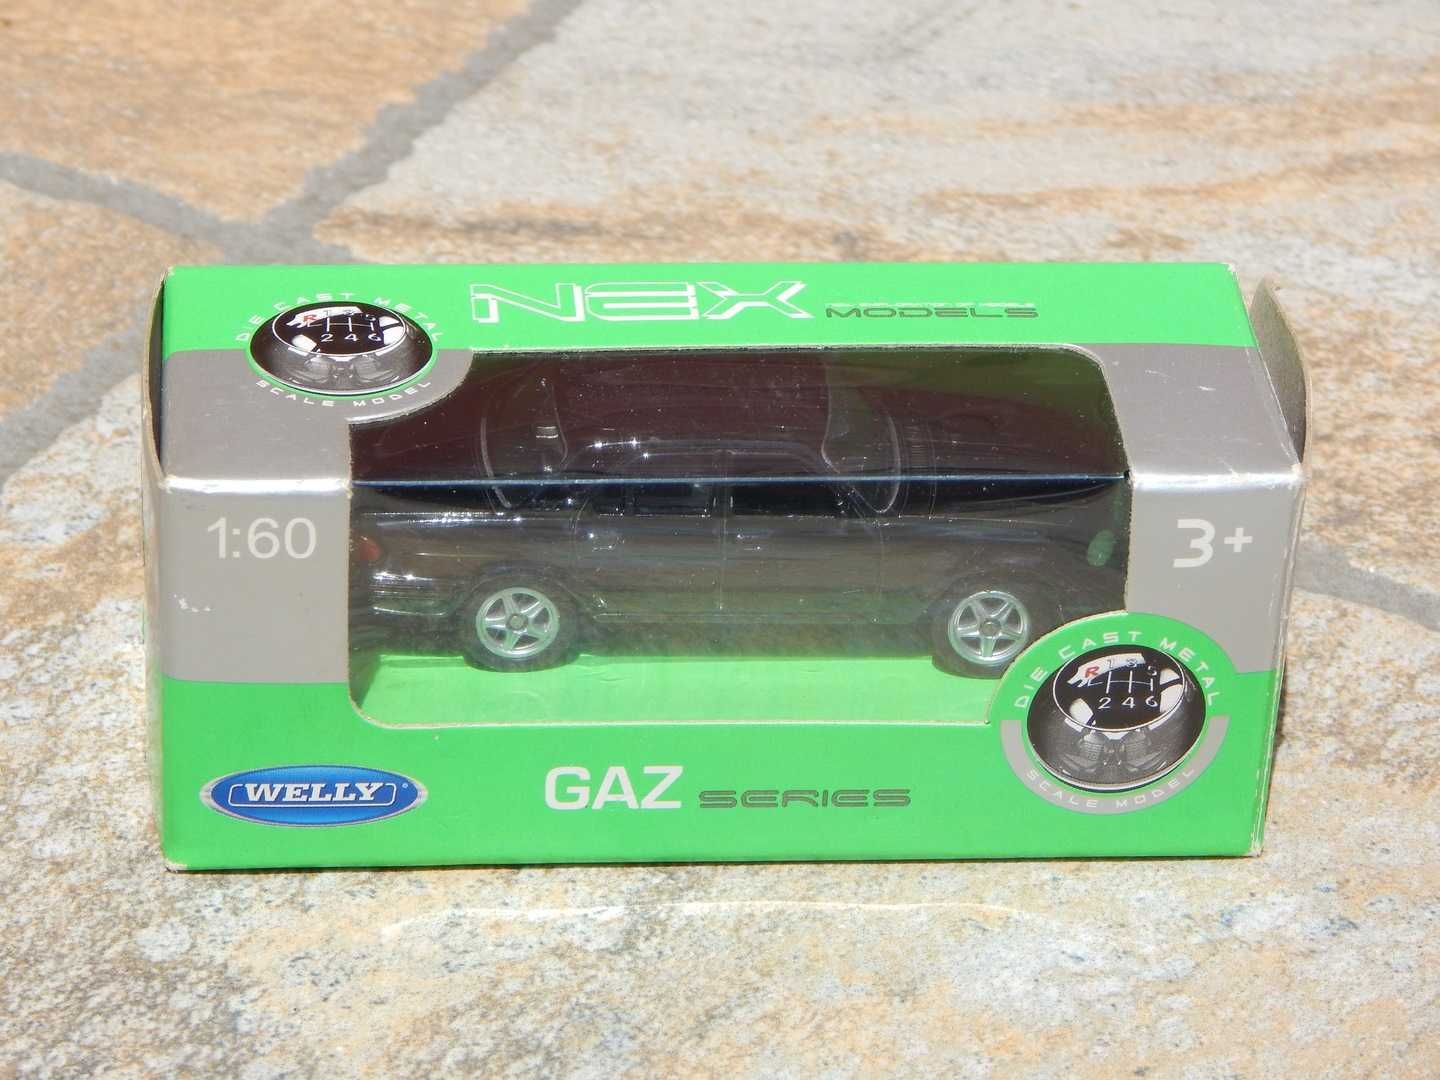 Macheta limuzina GAZ Volga 31105 neagra la cutie scara 1:60